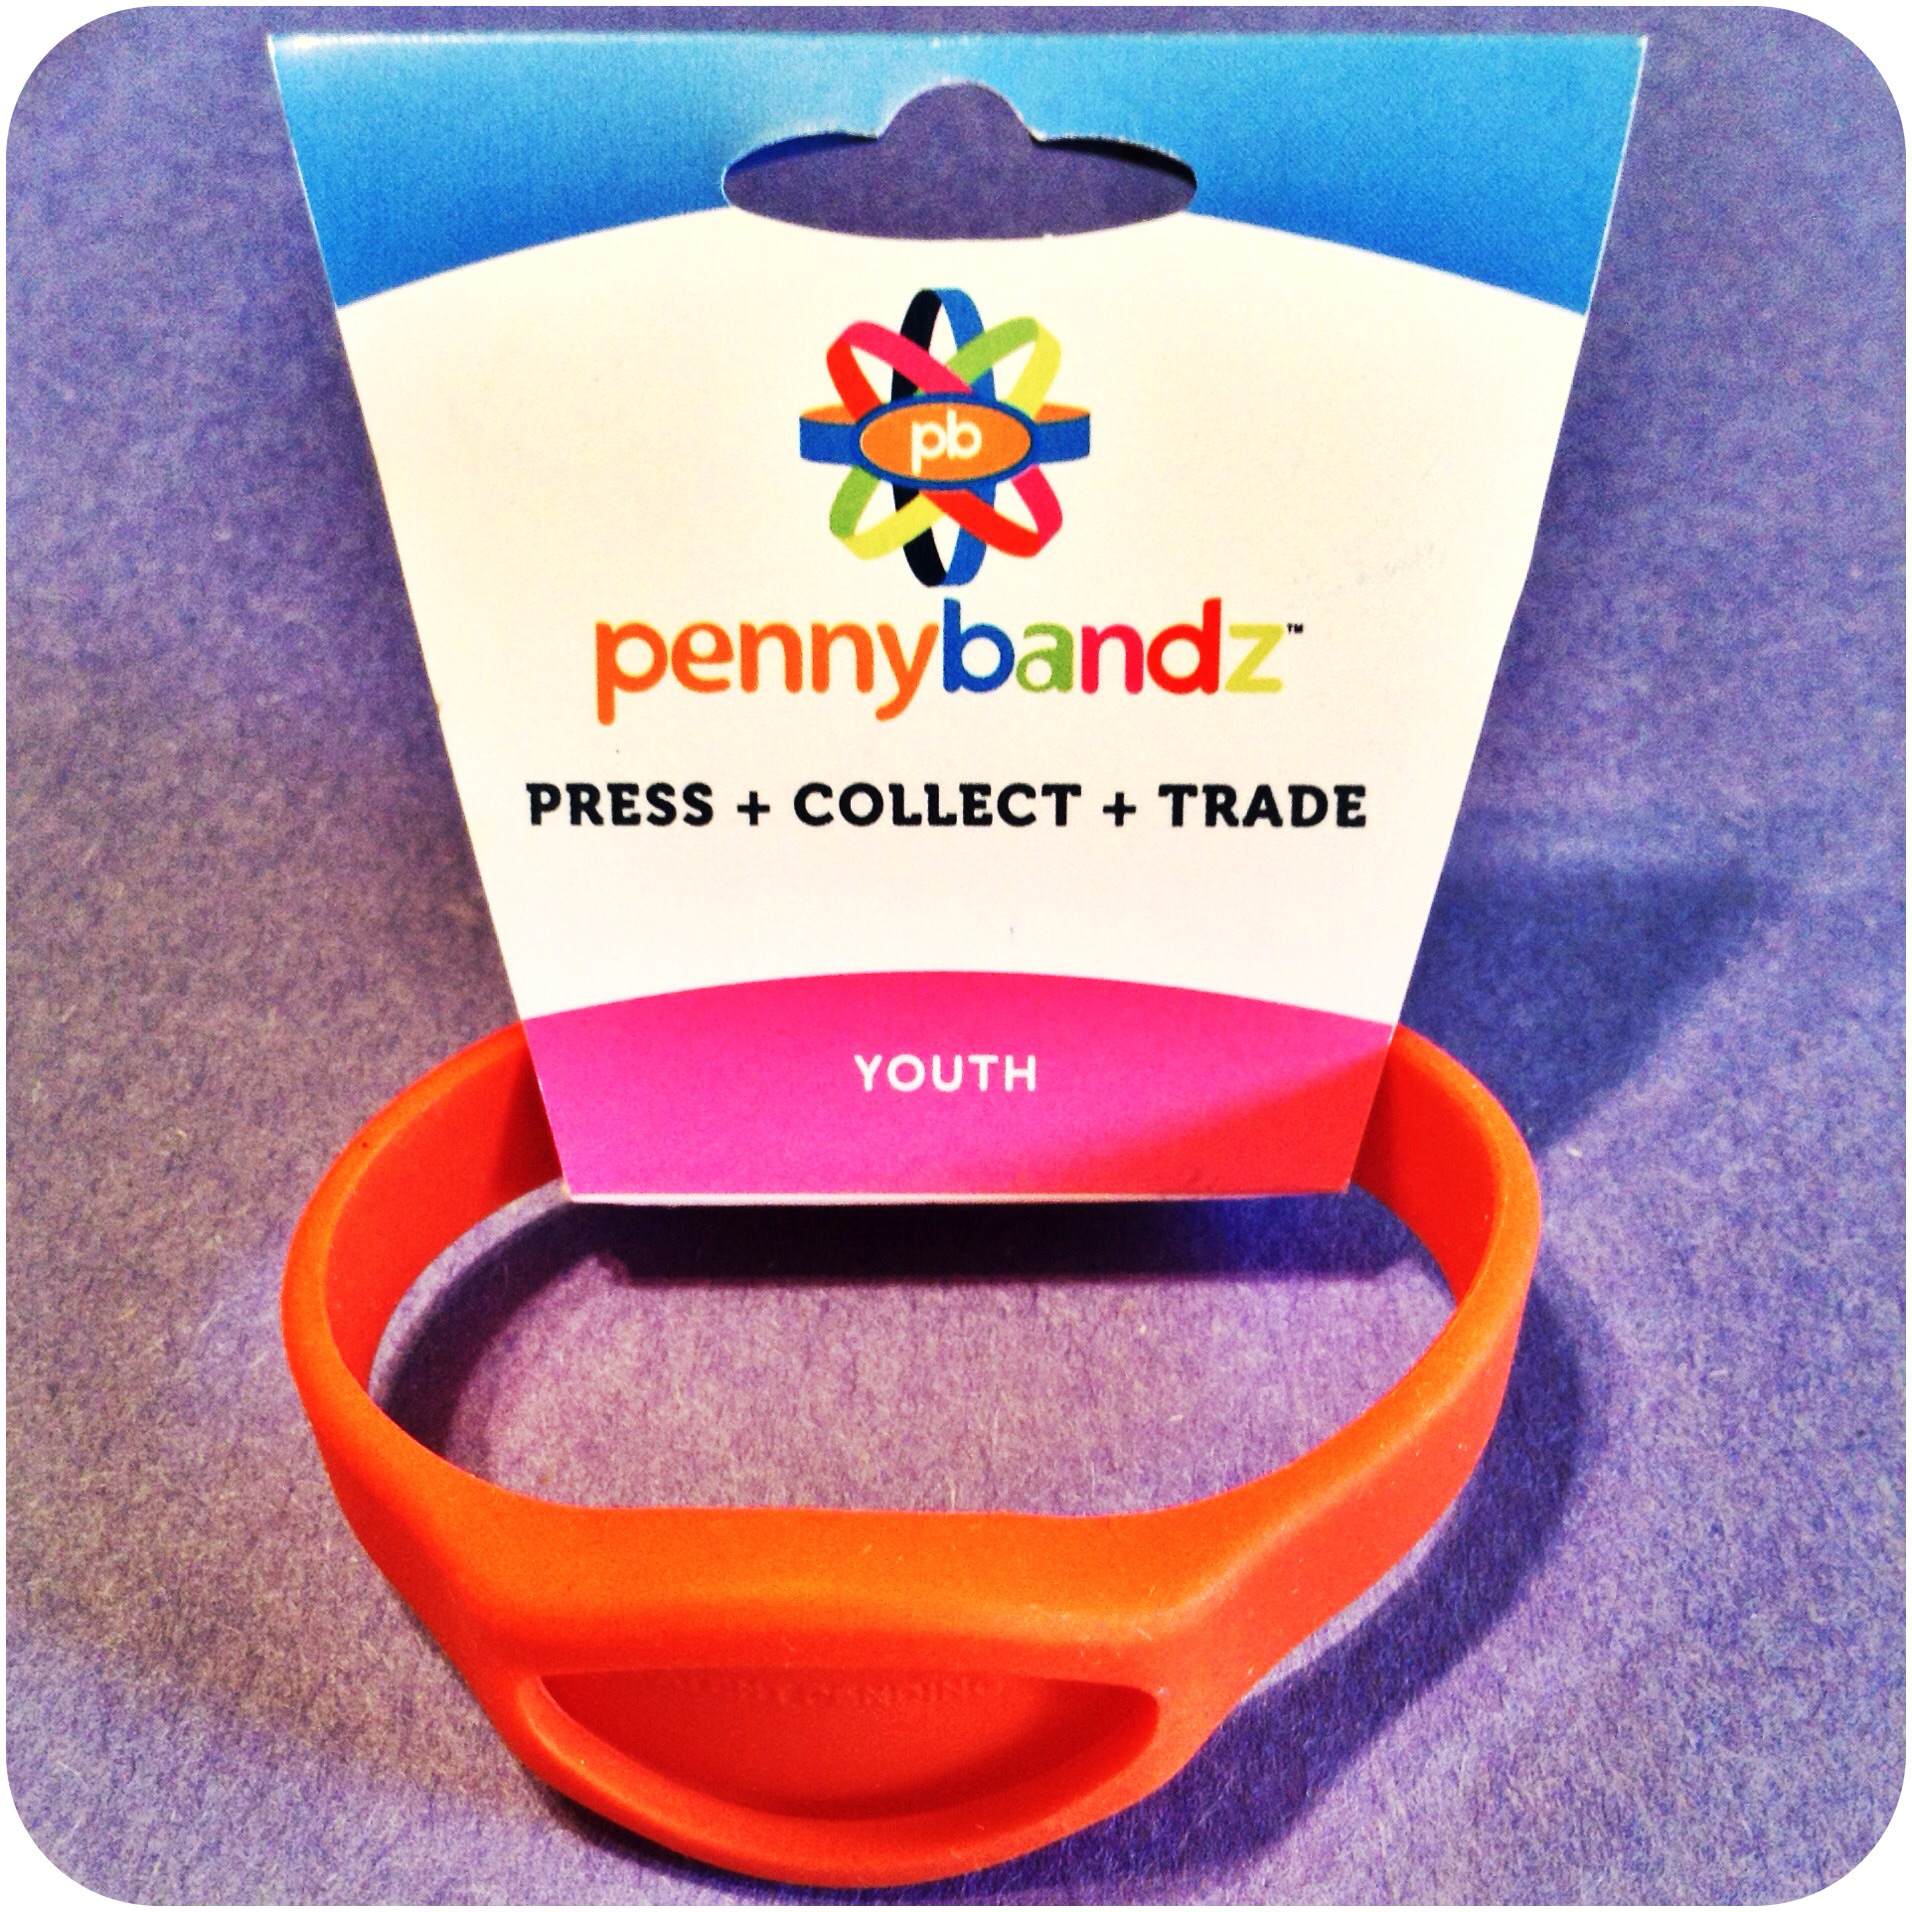 Hot Lava Orange Pennybandz® Elongated Pressed Penny Holder Wristband, Youth Size